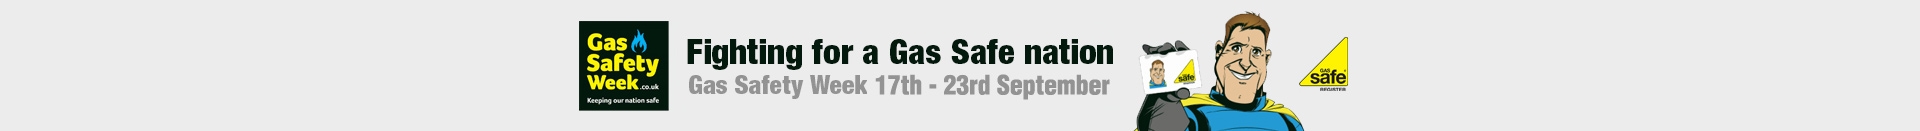 Gas Safety Week 2018